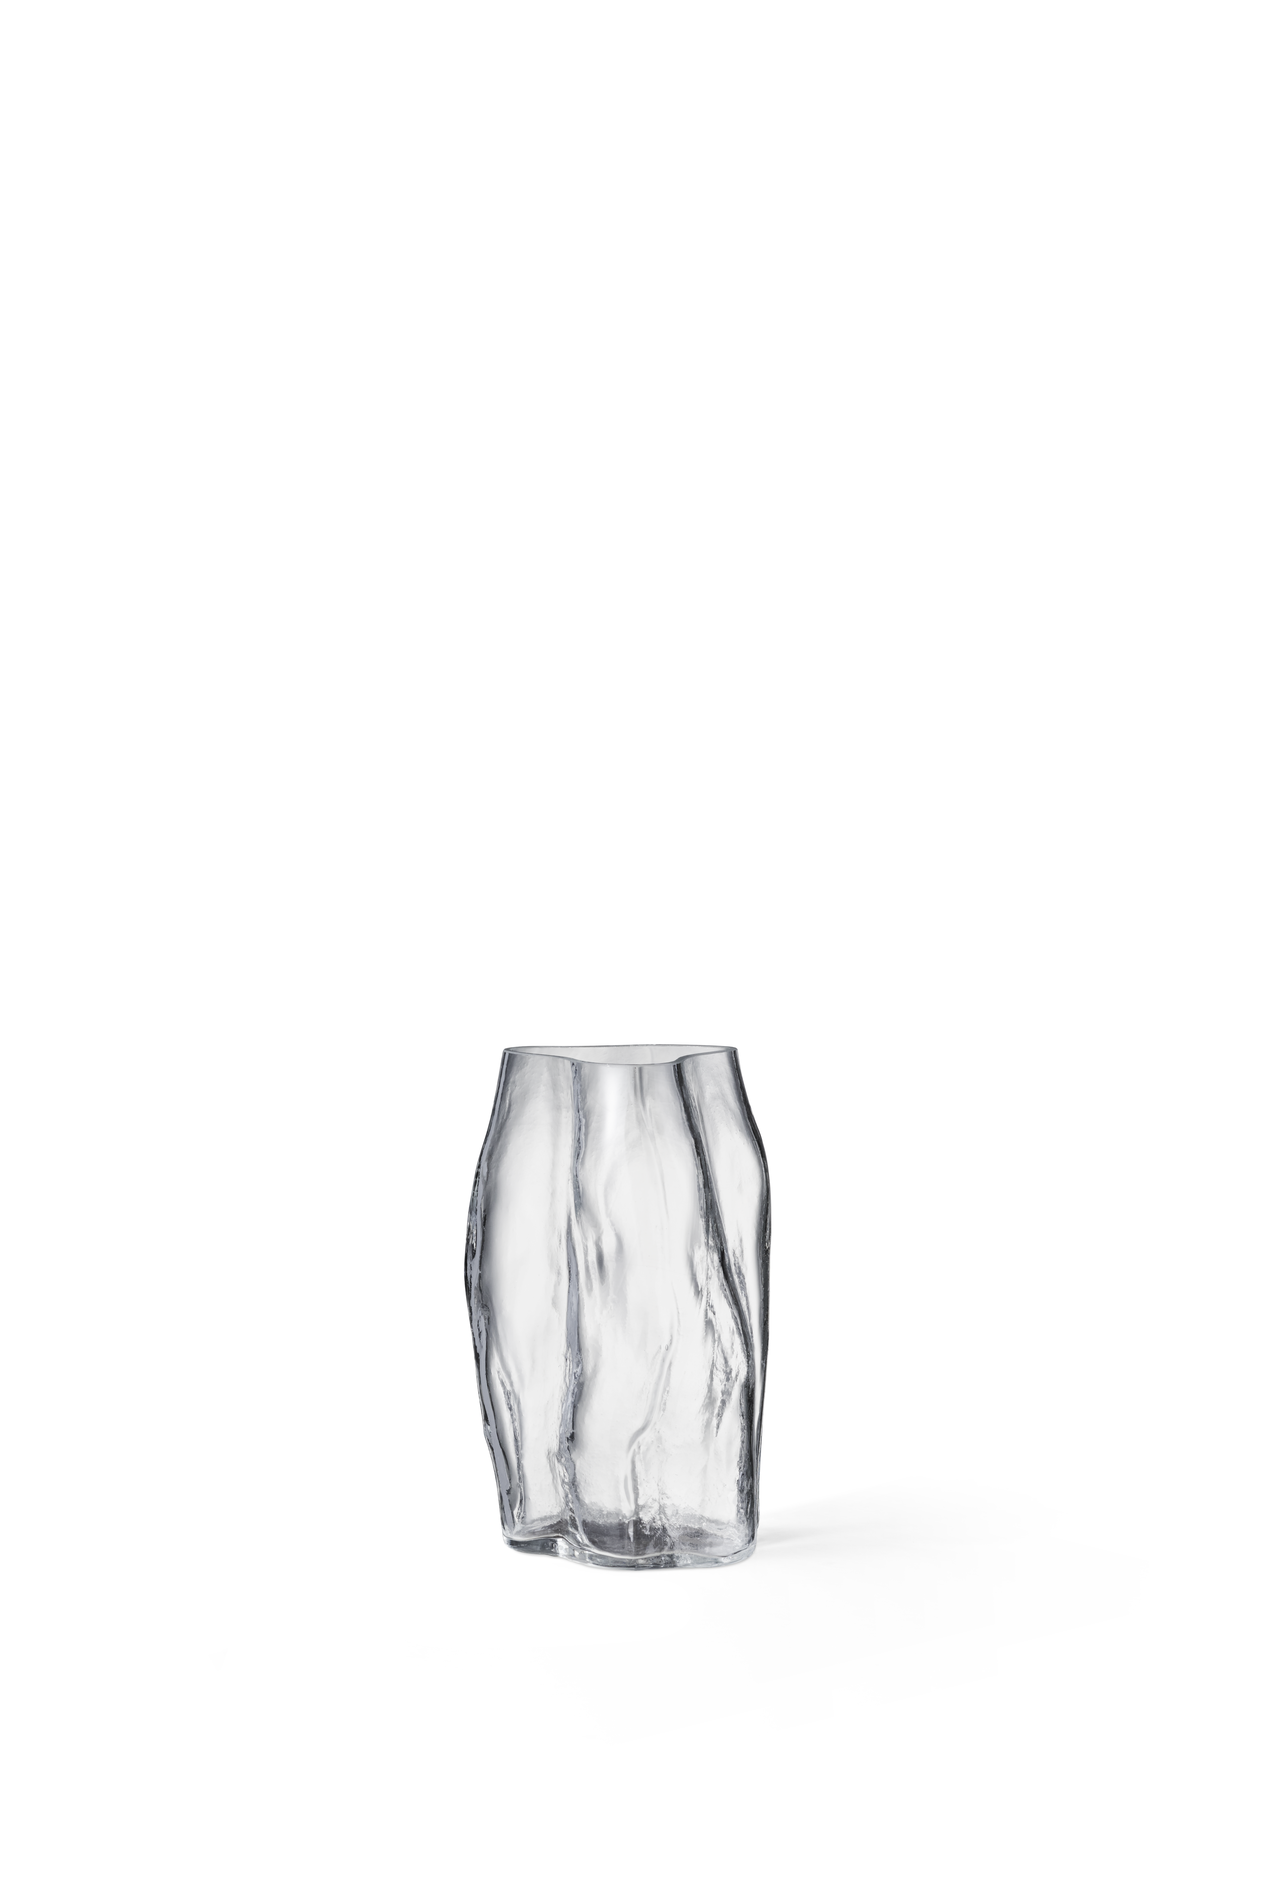 Blæhr Vase Small